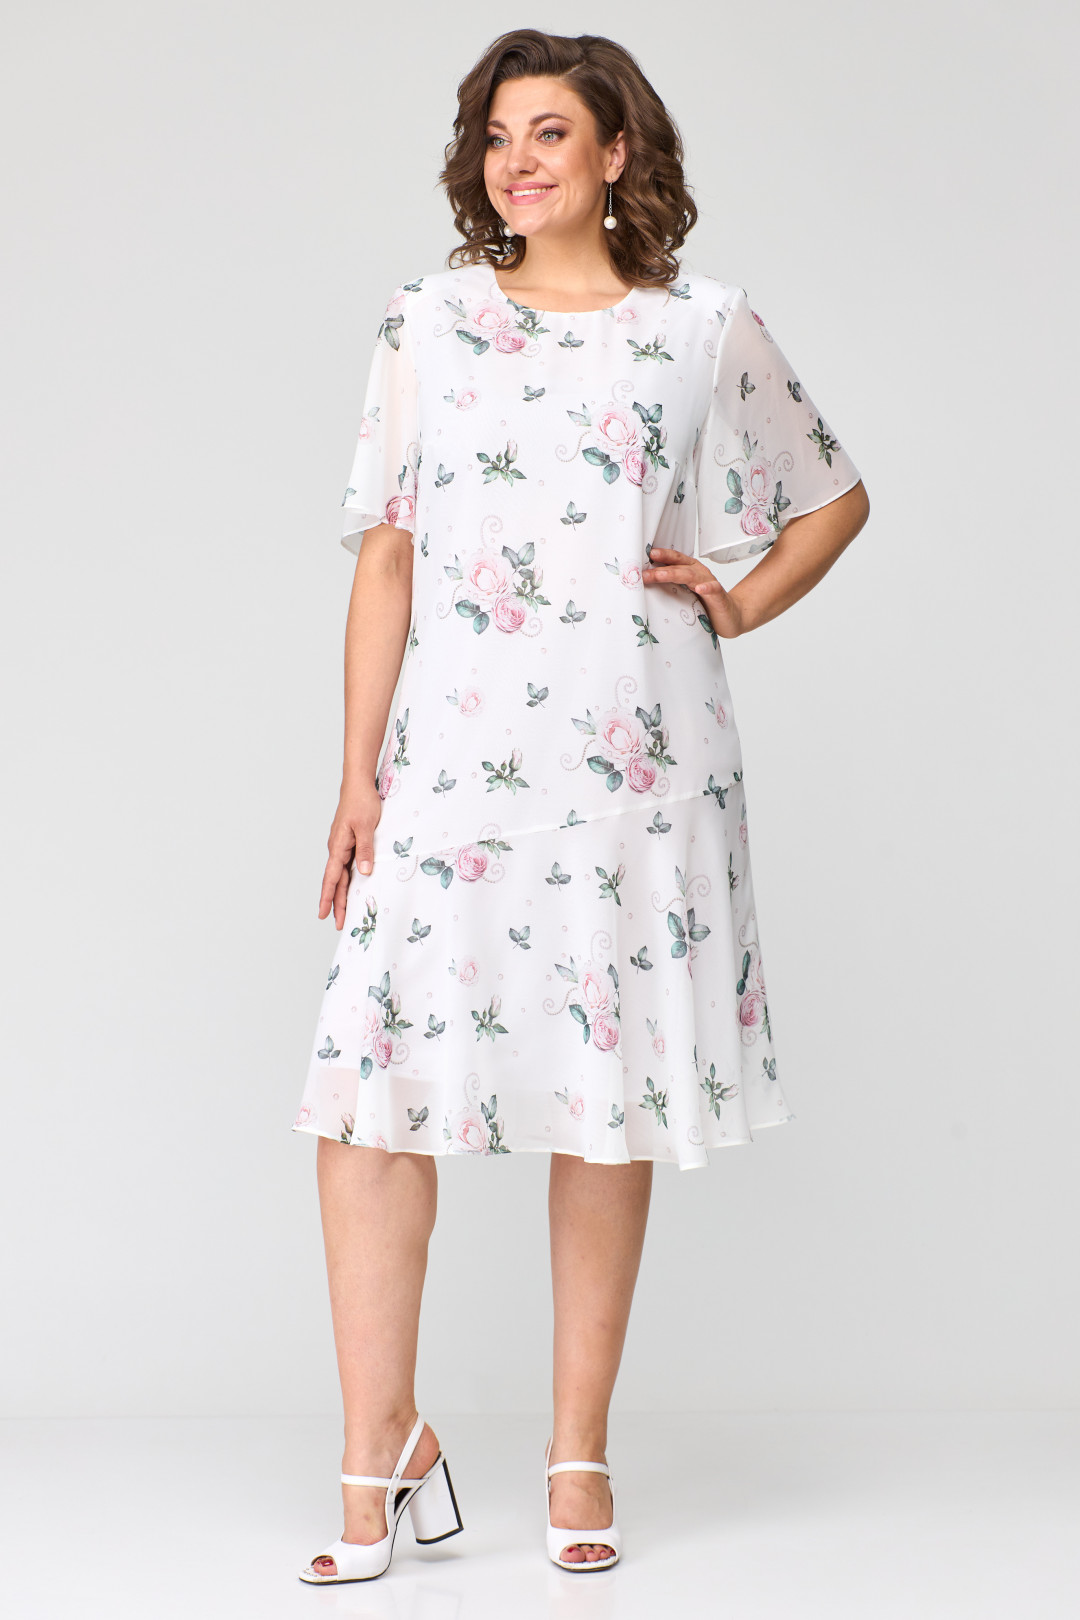 Платье Элль-стиль 2219/1 принт цветы на белом фоне